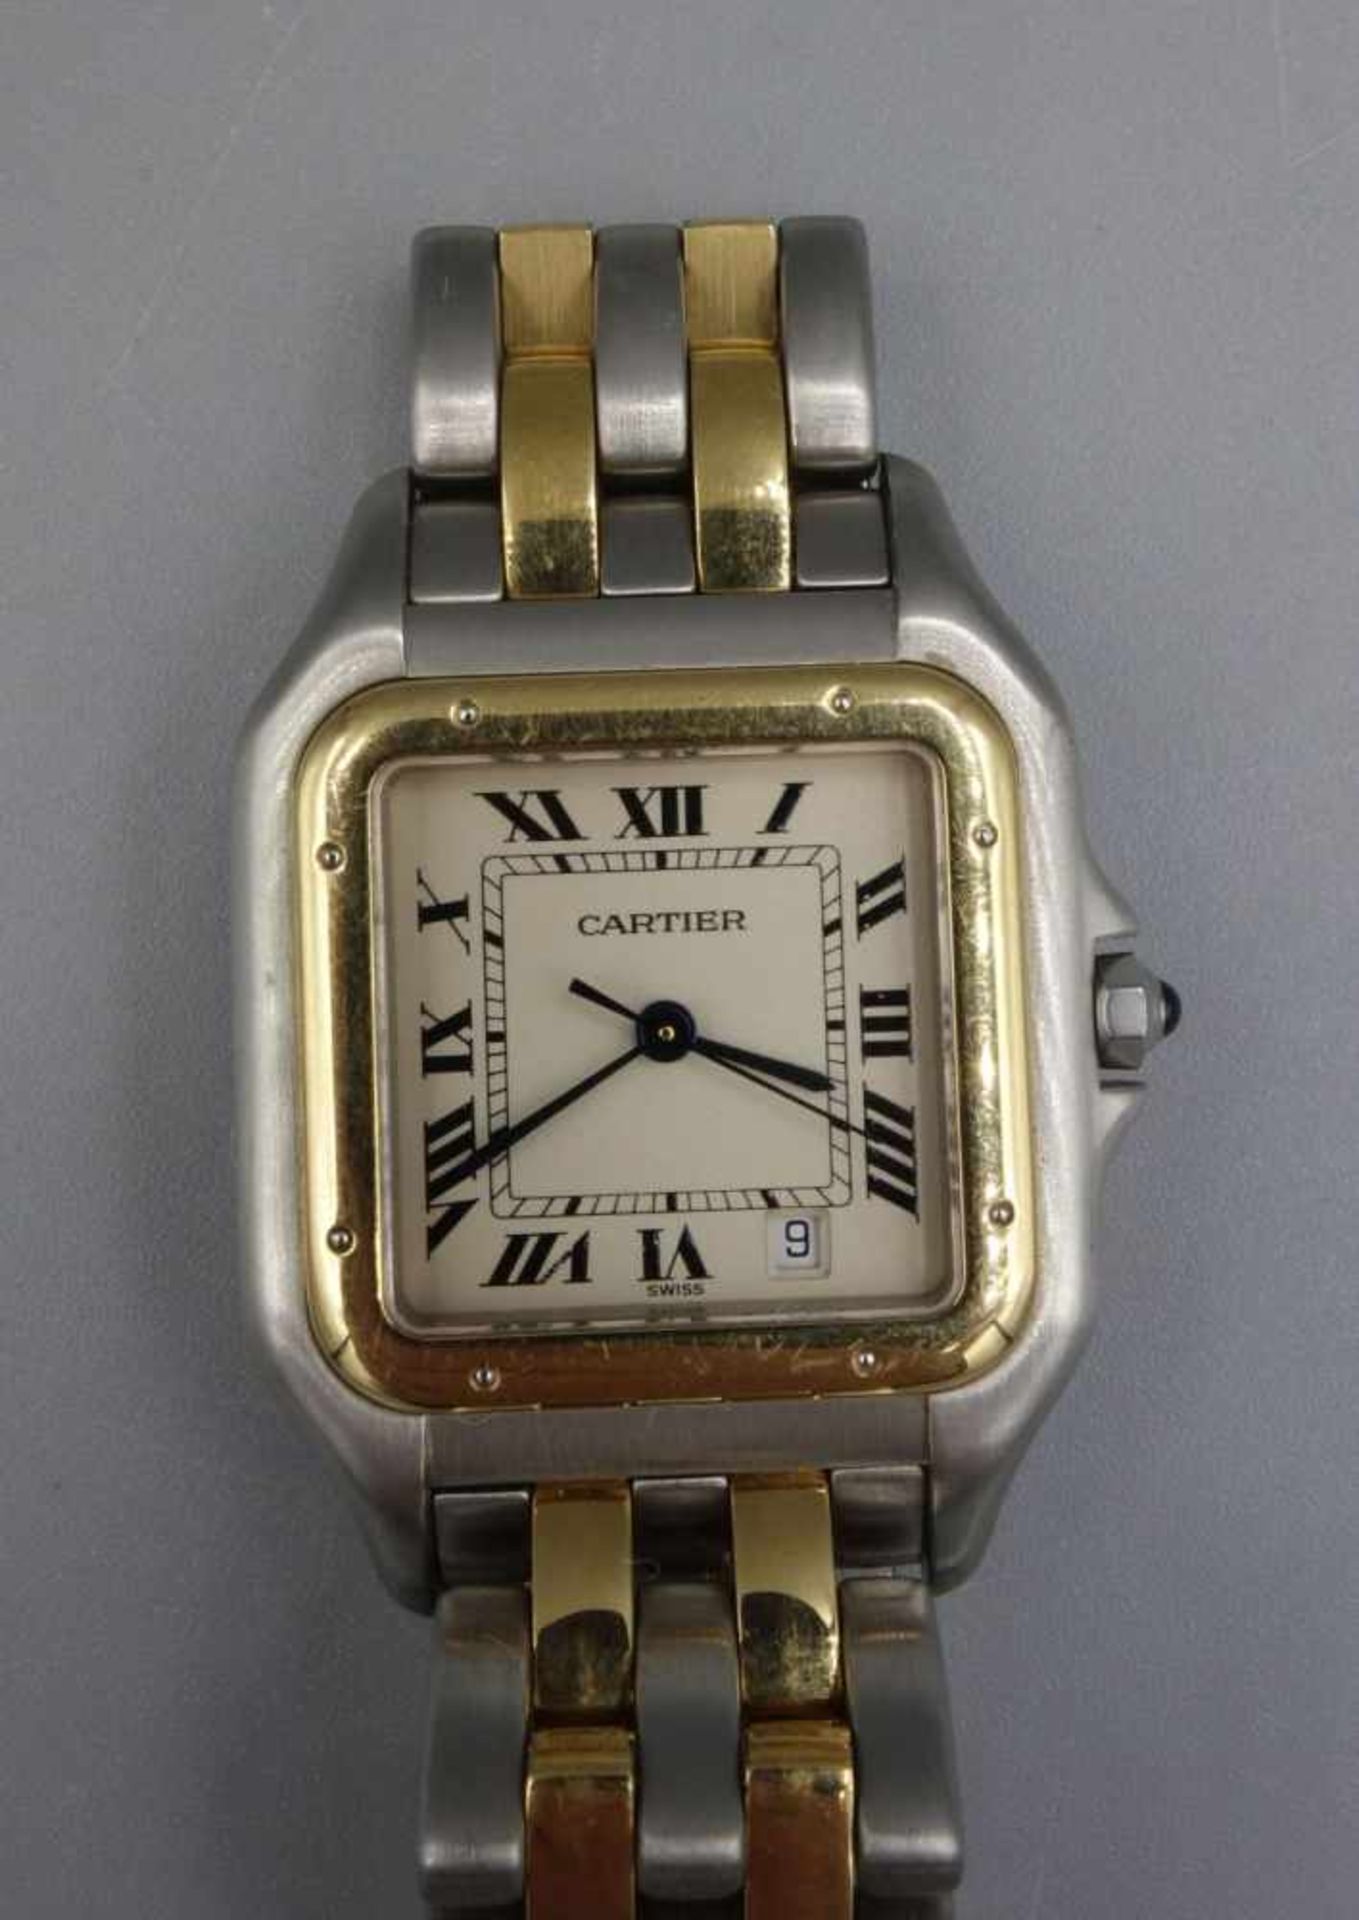 VINTAGE ARMBANDUHR - Cartier "Panthere" / wristwatch, Mitte 20. Jh., Quartz-Uhr, Manufaktur - Bild 4 aus 7